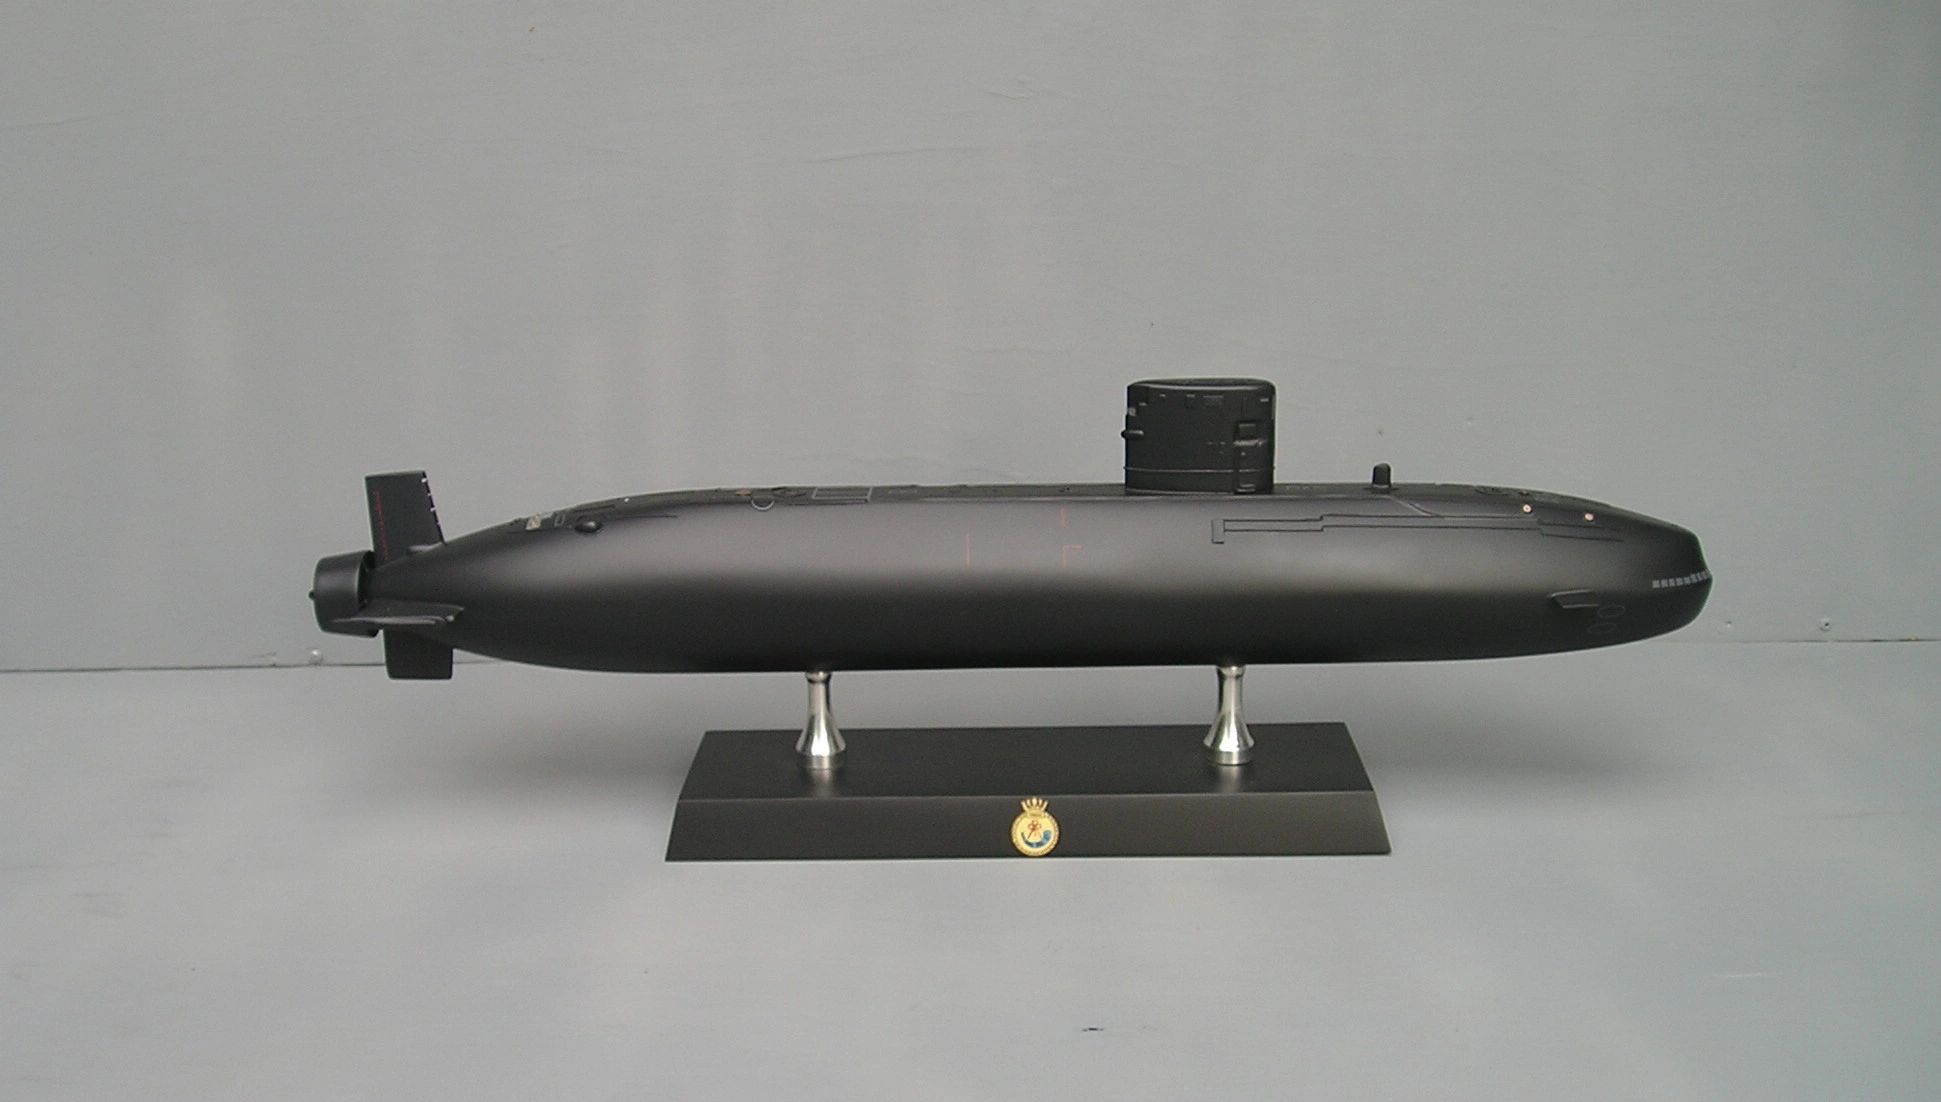 Trafalgar Class custom model